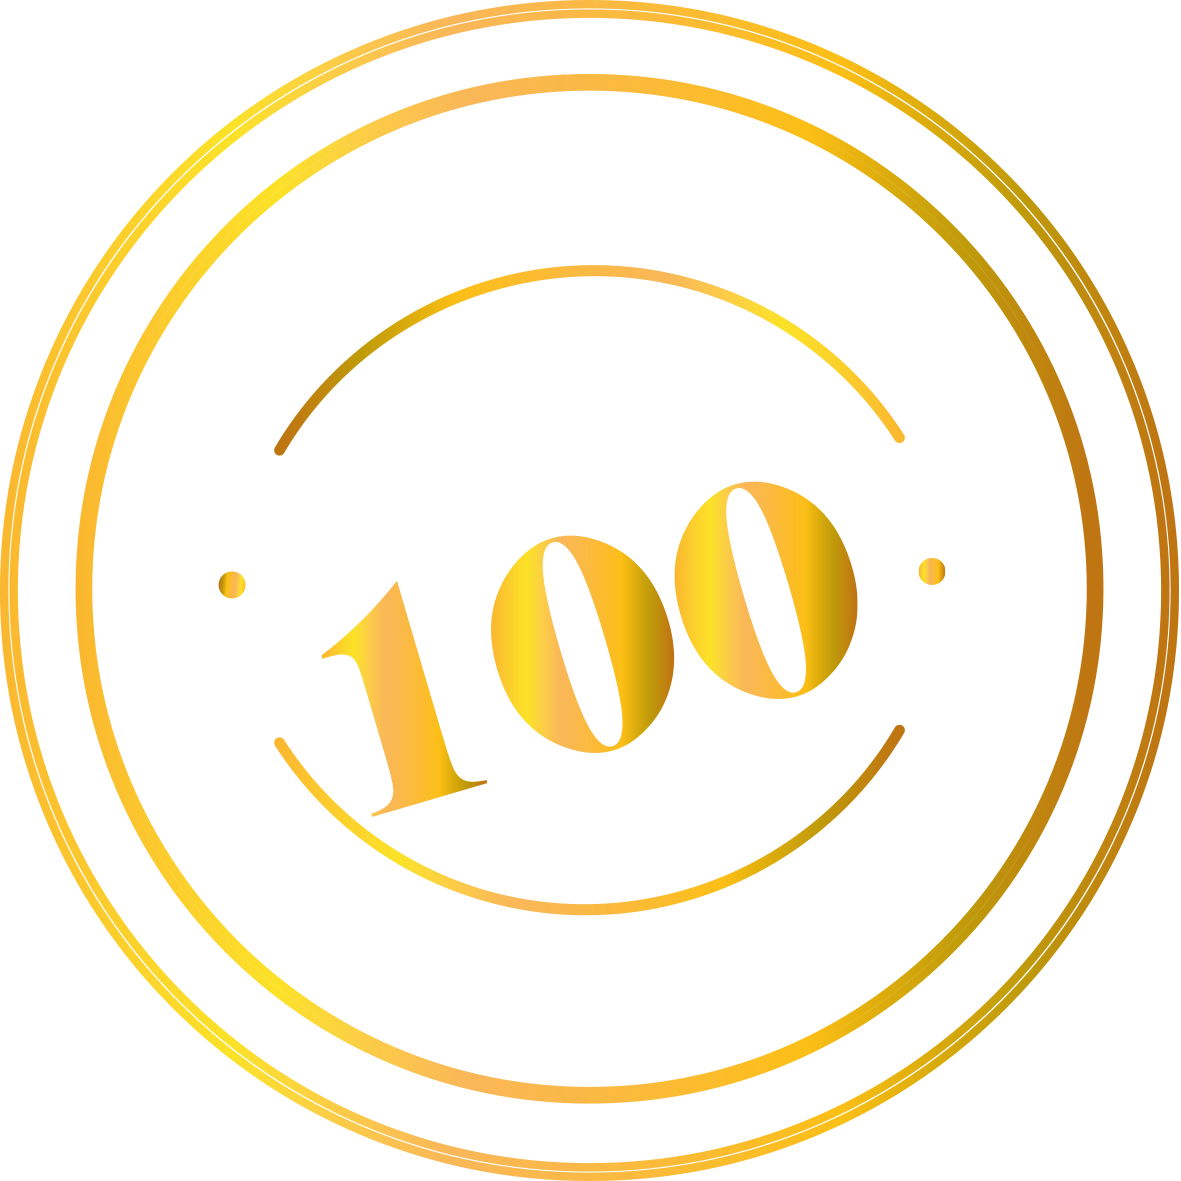 TOP100 Enoturismo Spain